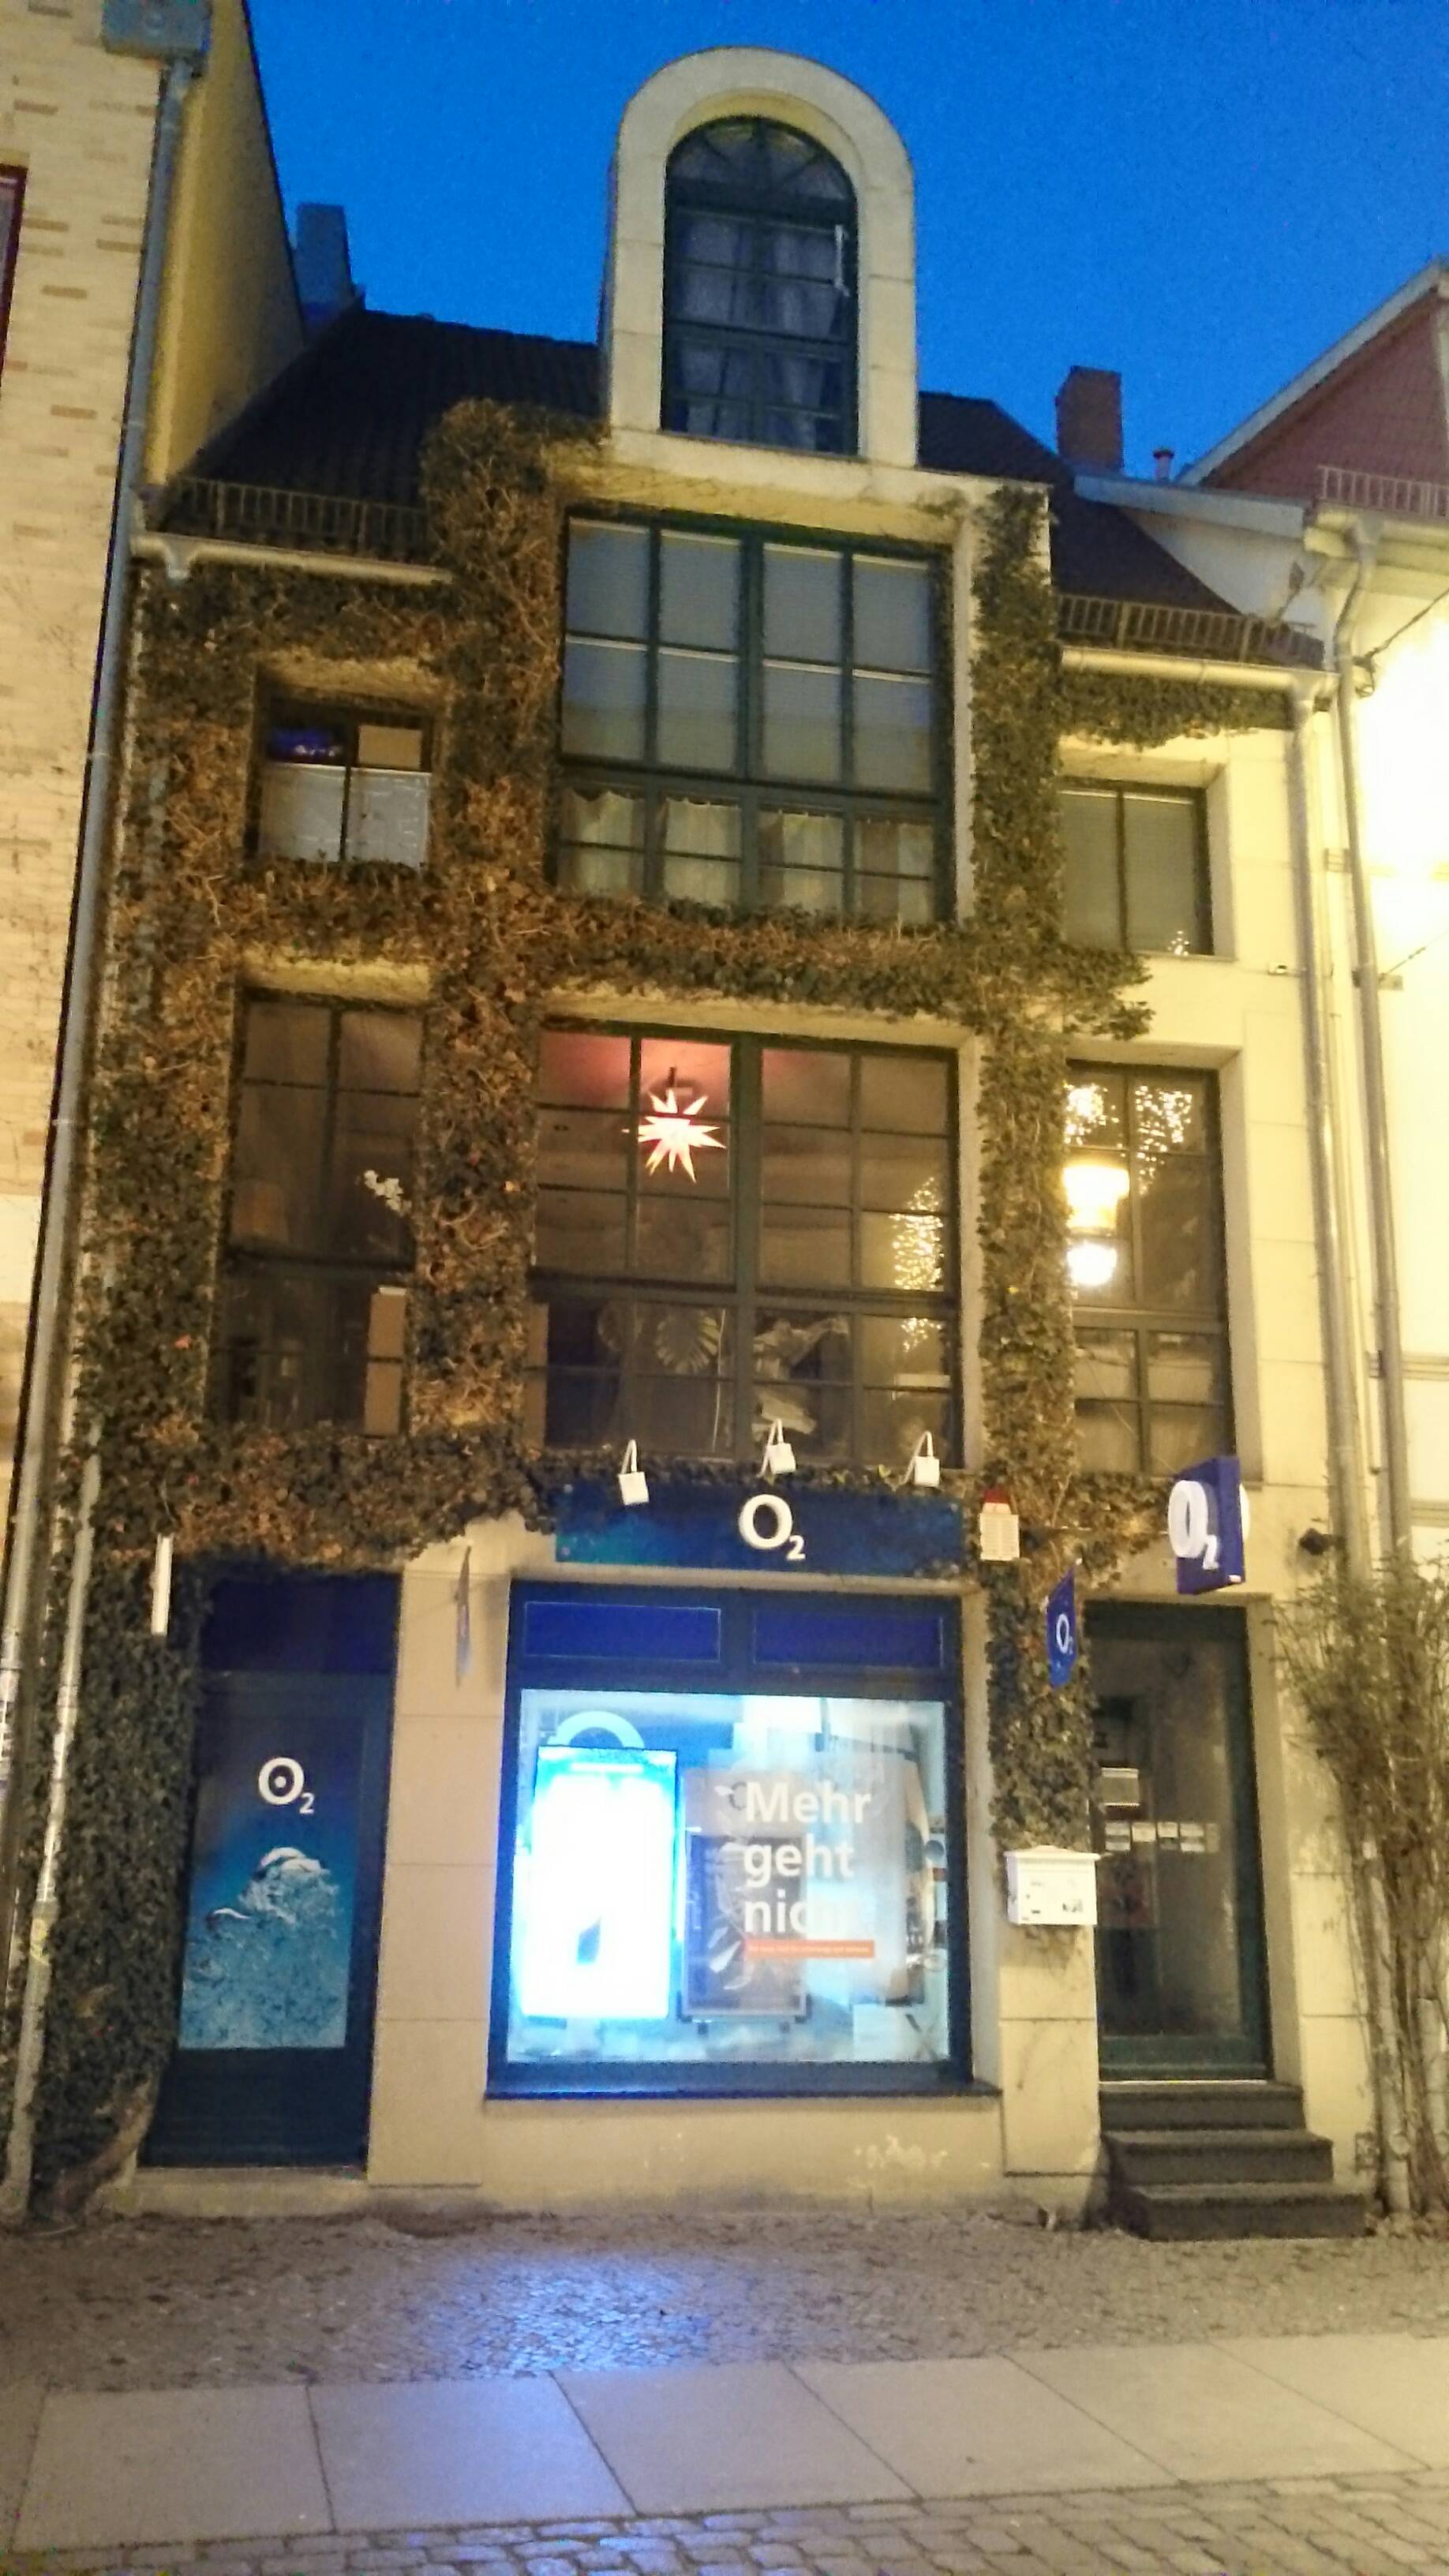 Bild 1 o2 Shop in Stralsund